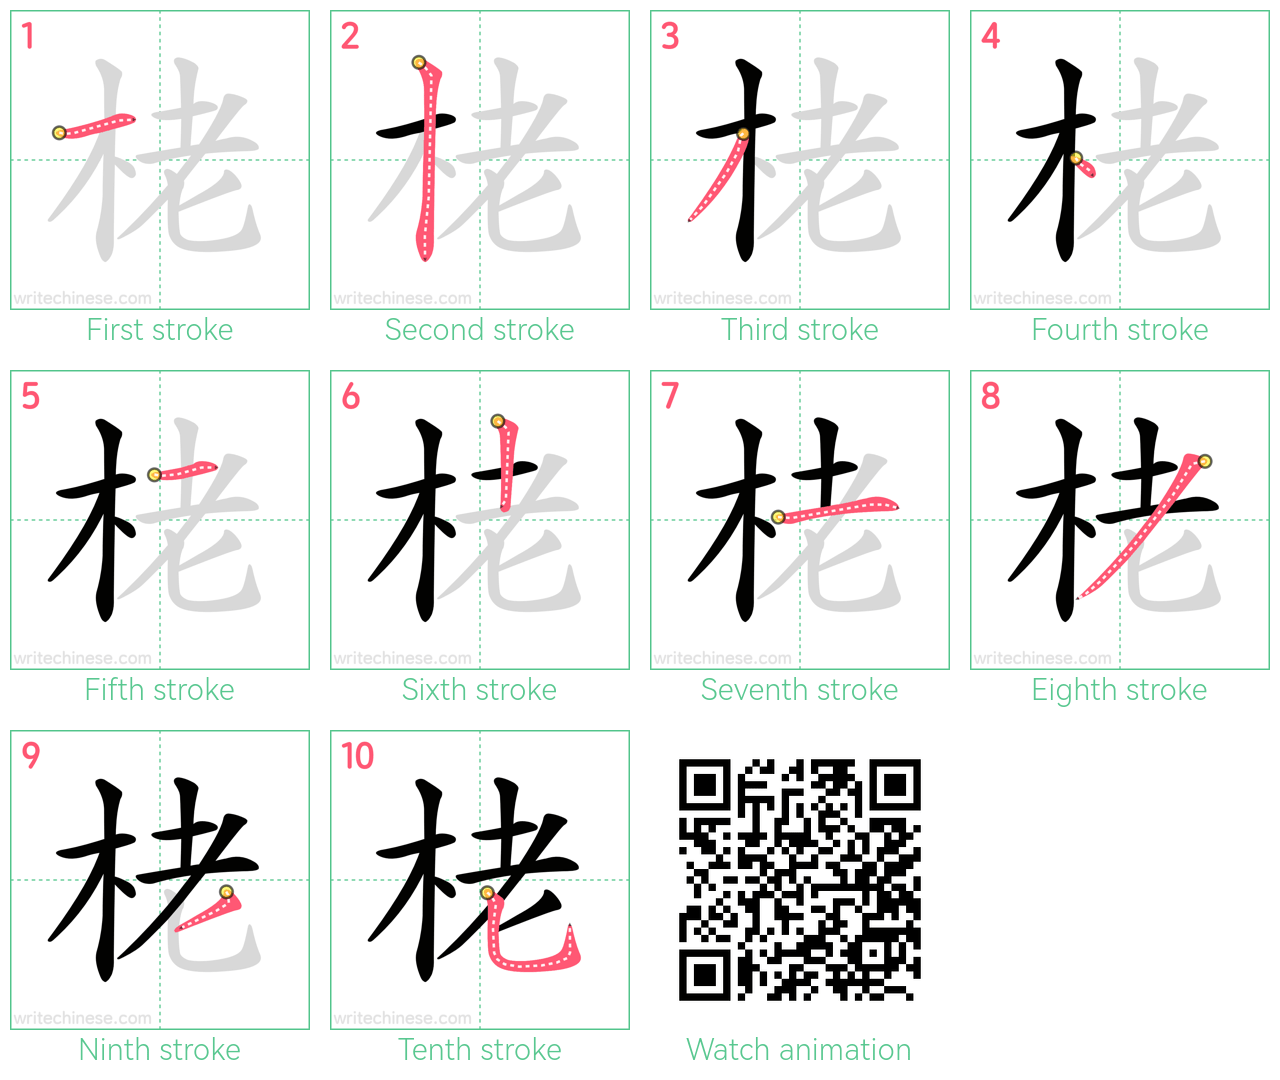 栳 step-by-step stroke order diagrams